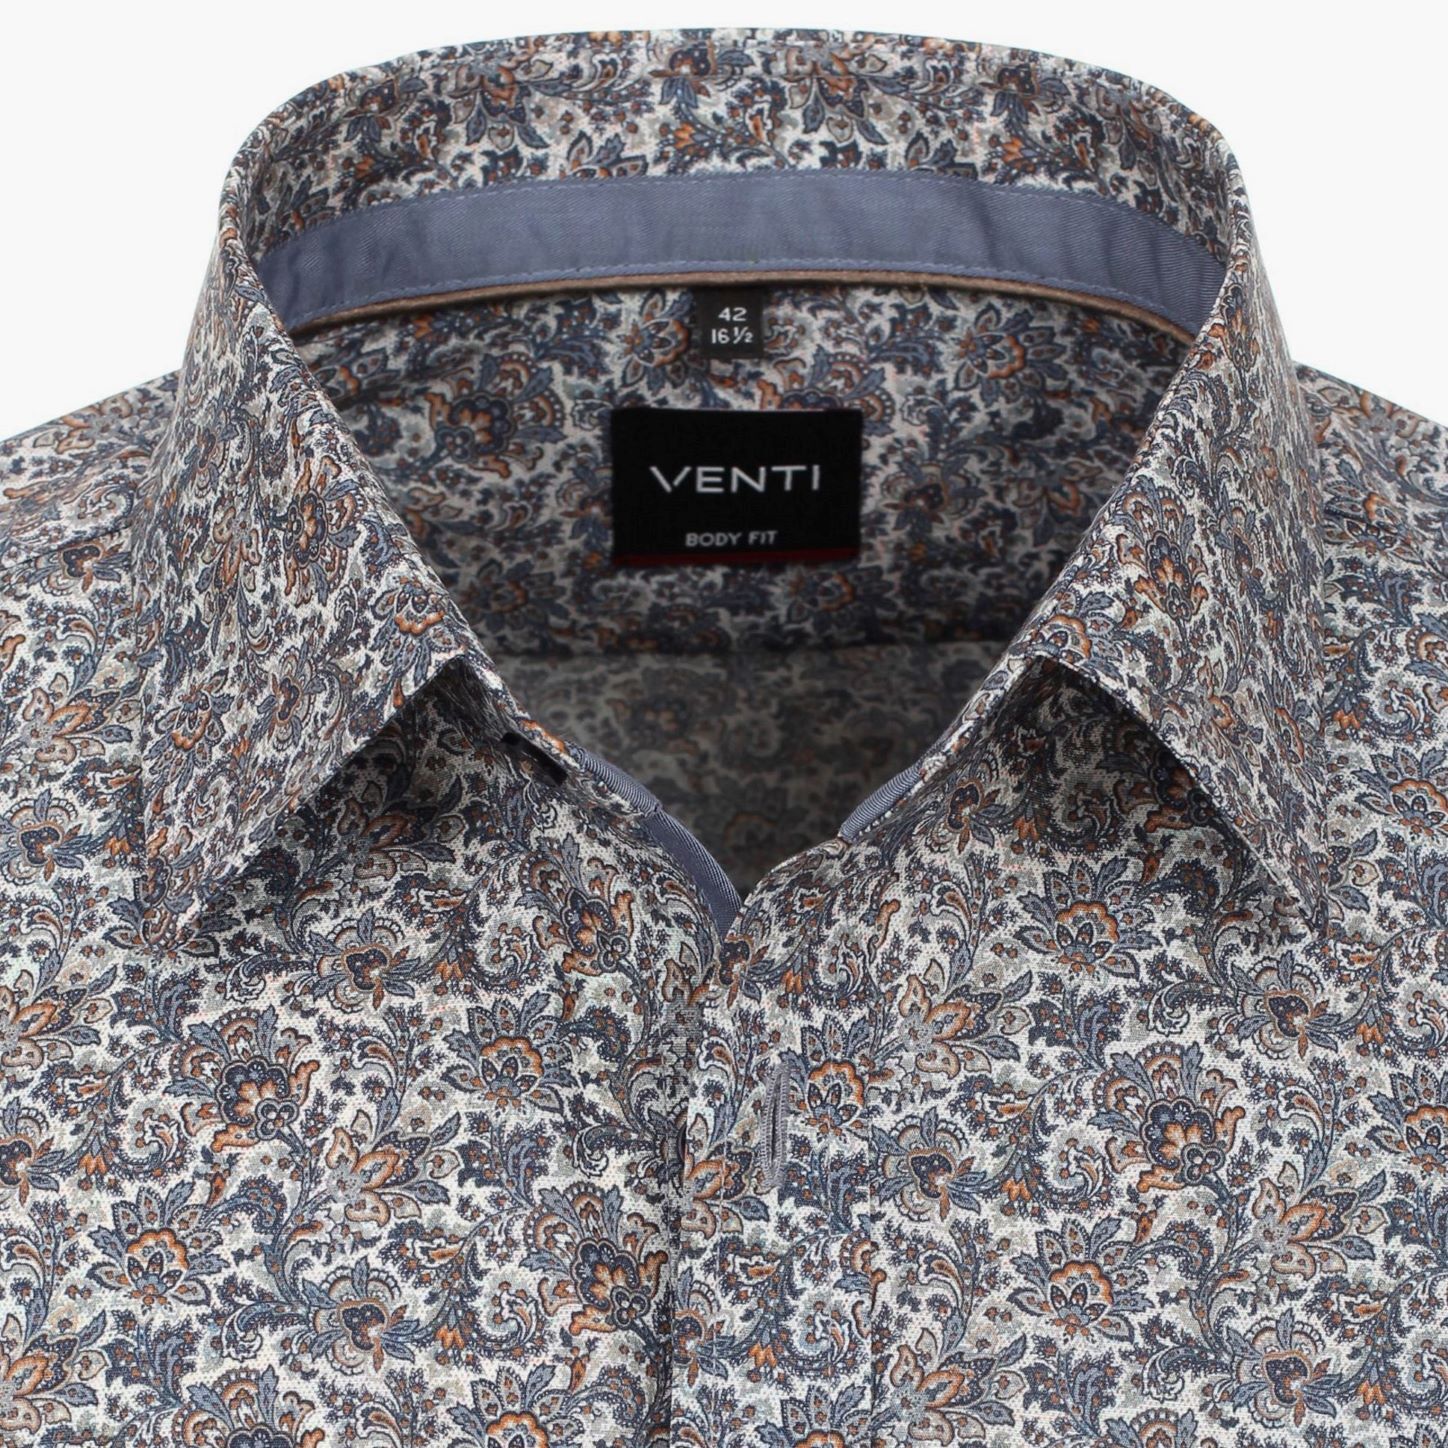 Рубашка Venti Body Fit 123932900-100 с растительным рисунком